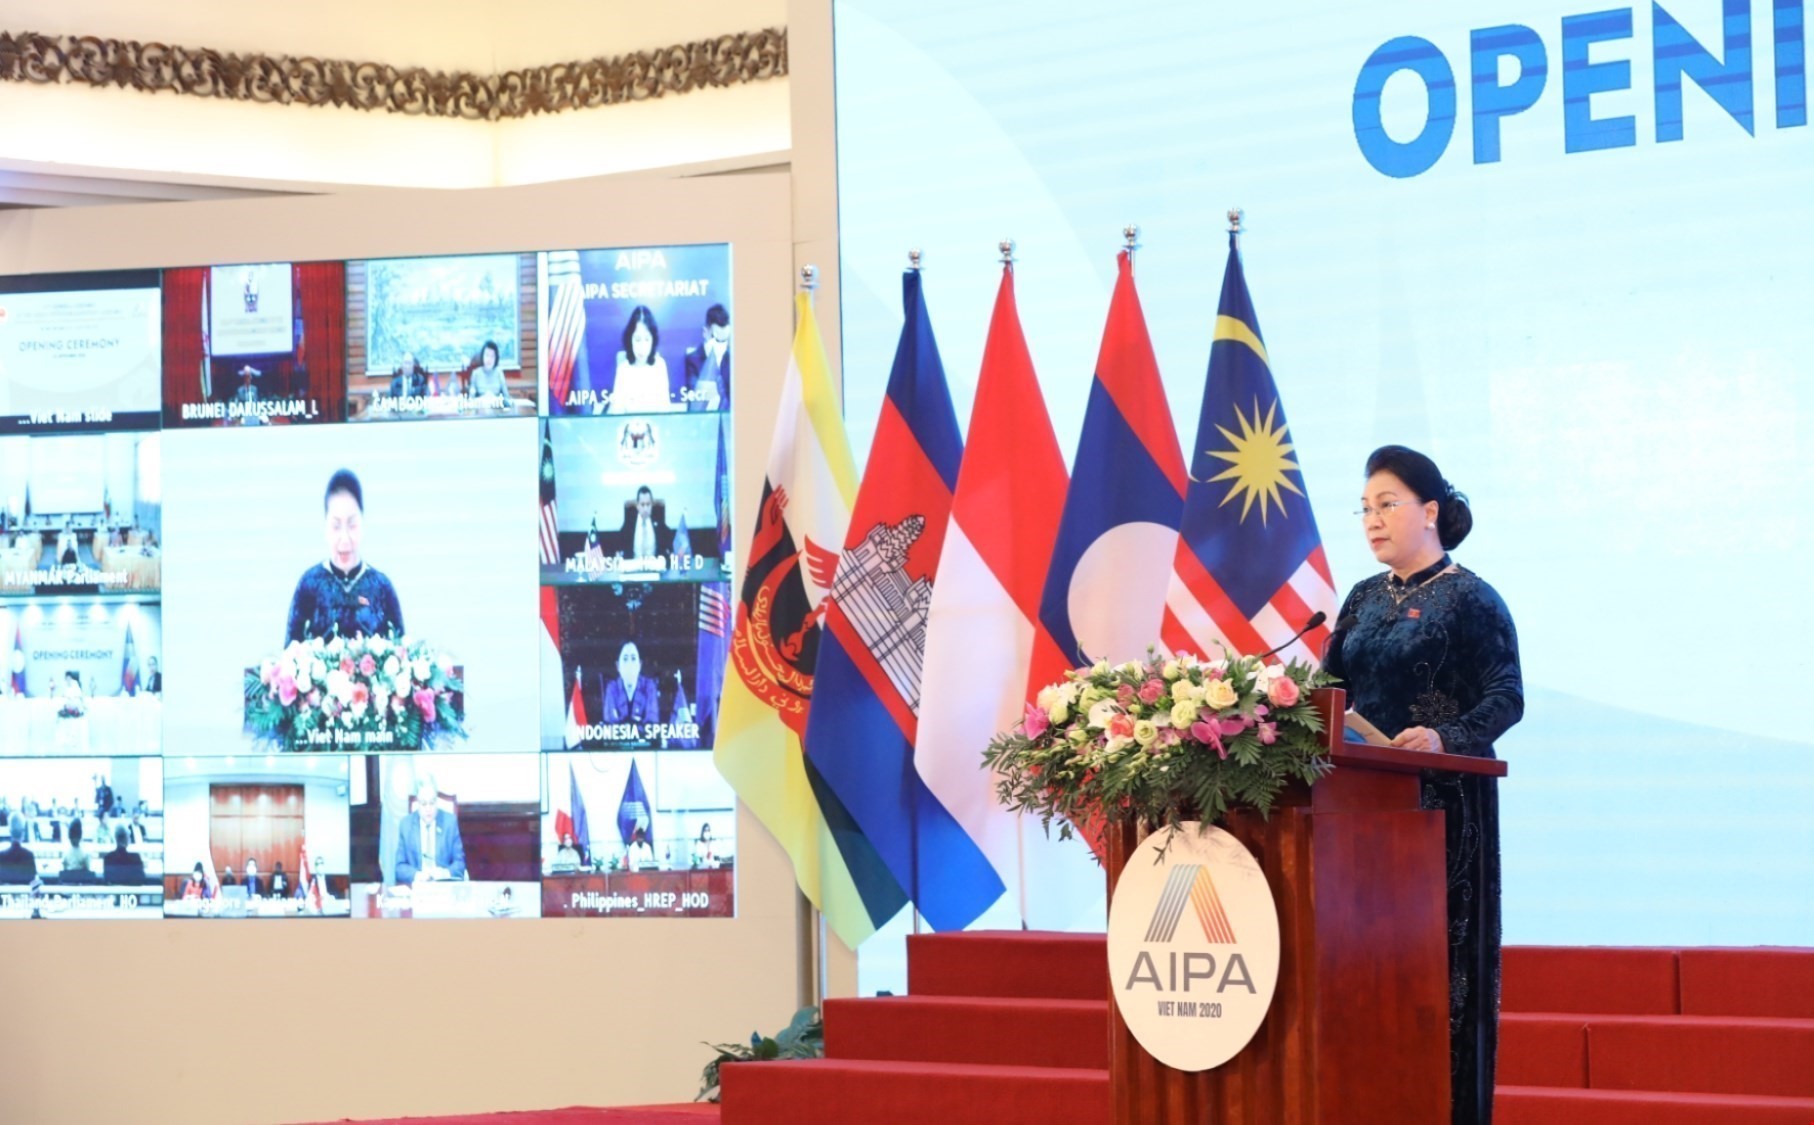 Chủ tịch Quốc hội Nguyễn Thị Kim Ngân phát biểu khai mạc Đại hội đồng Liên nghị viện Hiệp hội các quốc gia Đông Nam Á lần thứ 41 (AIPA 41). (Ảnh: TTXVN)